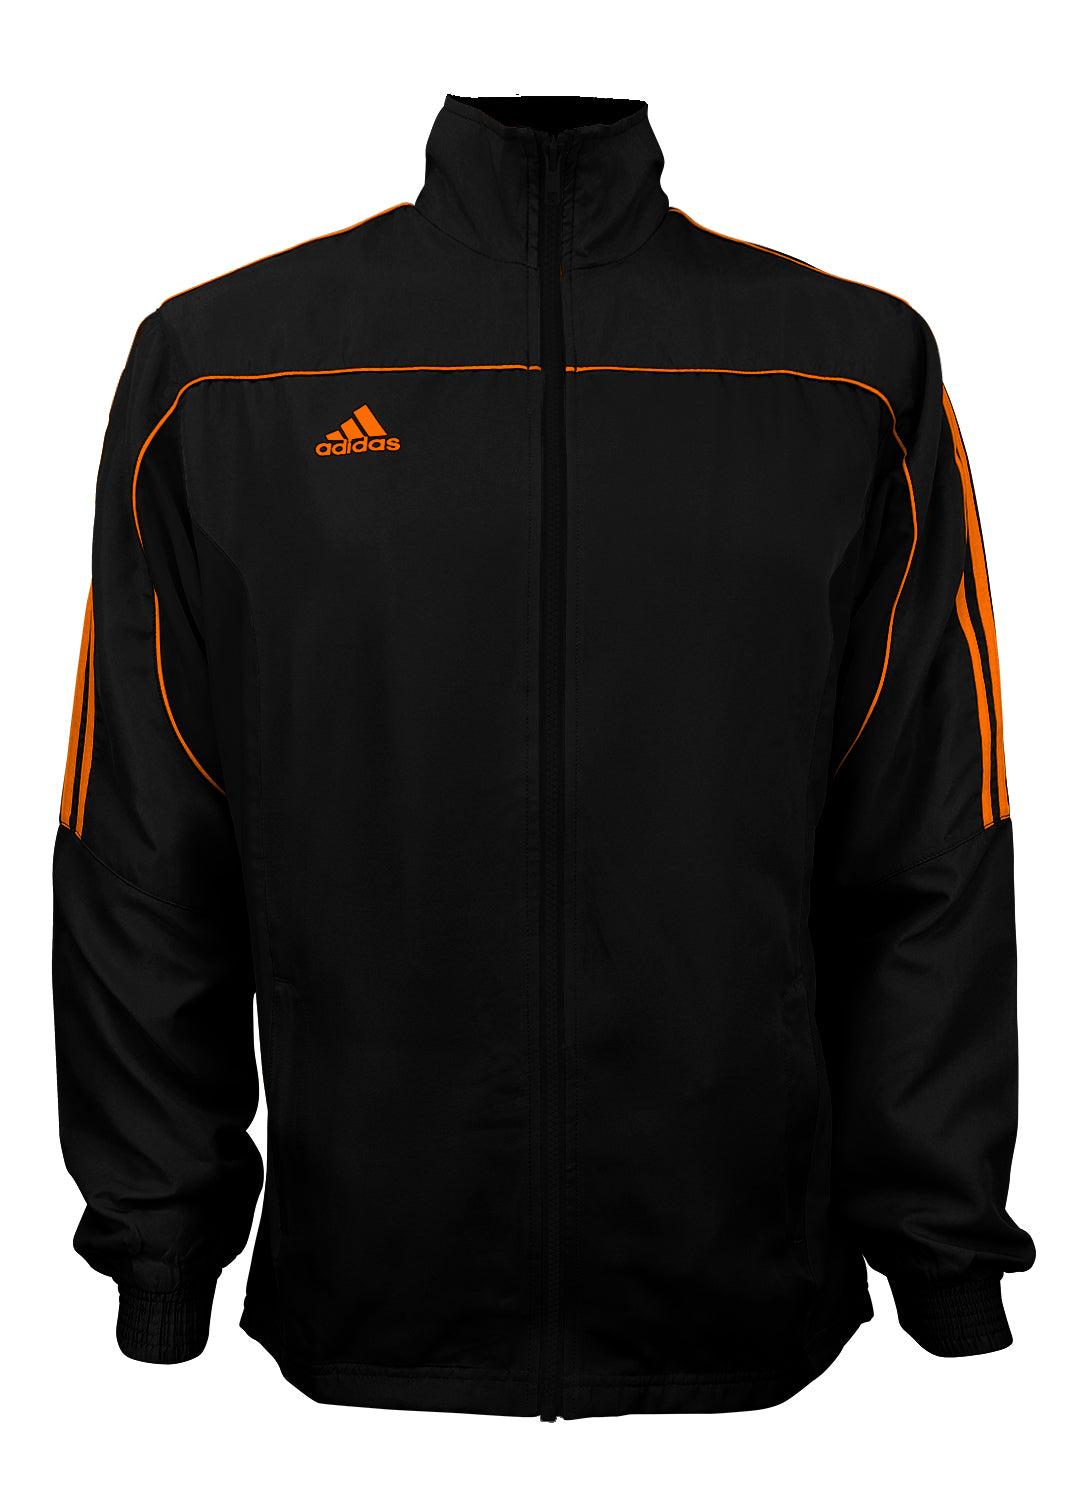 orange and black adidas jacket